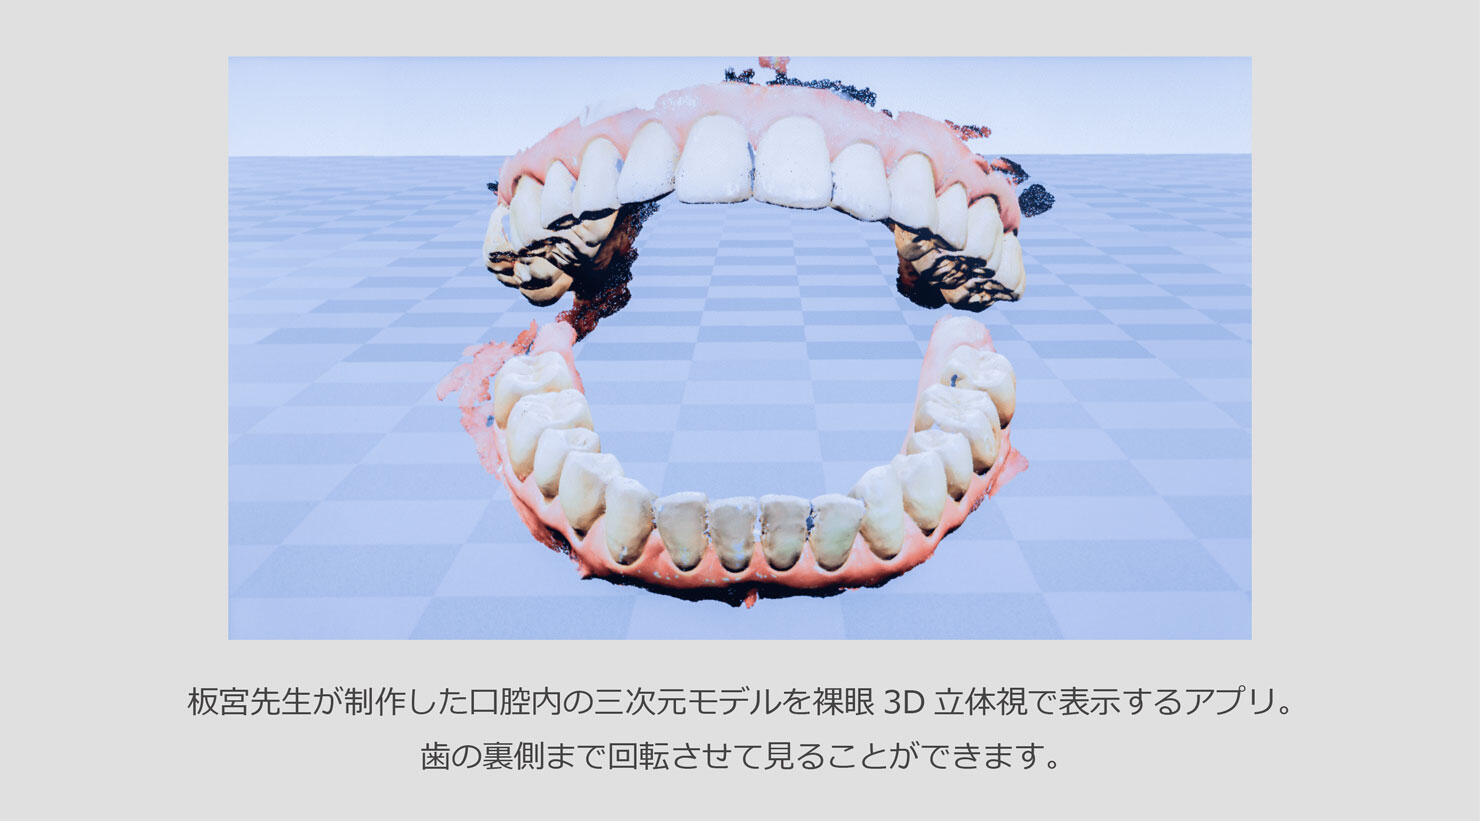 板宮先生が制作した口腔内の三次元モデルを裸眼3D立体視で表示するアプリ。歯の裏側まで回転させて見ることができます。